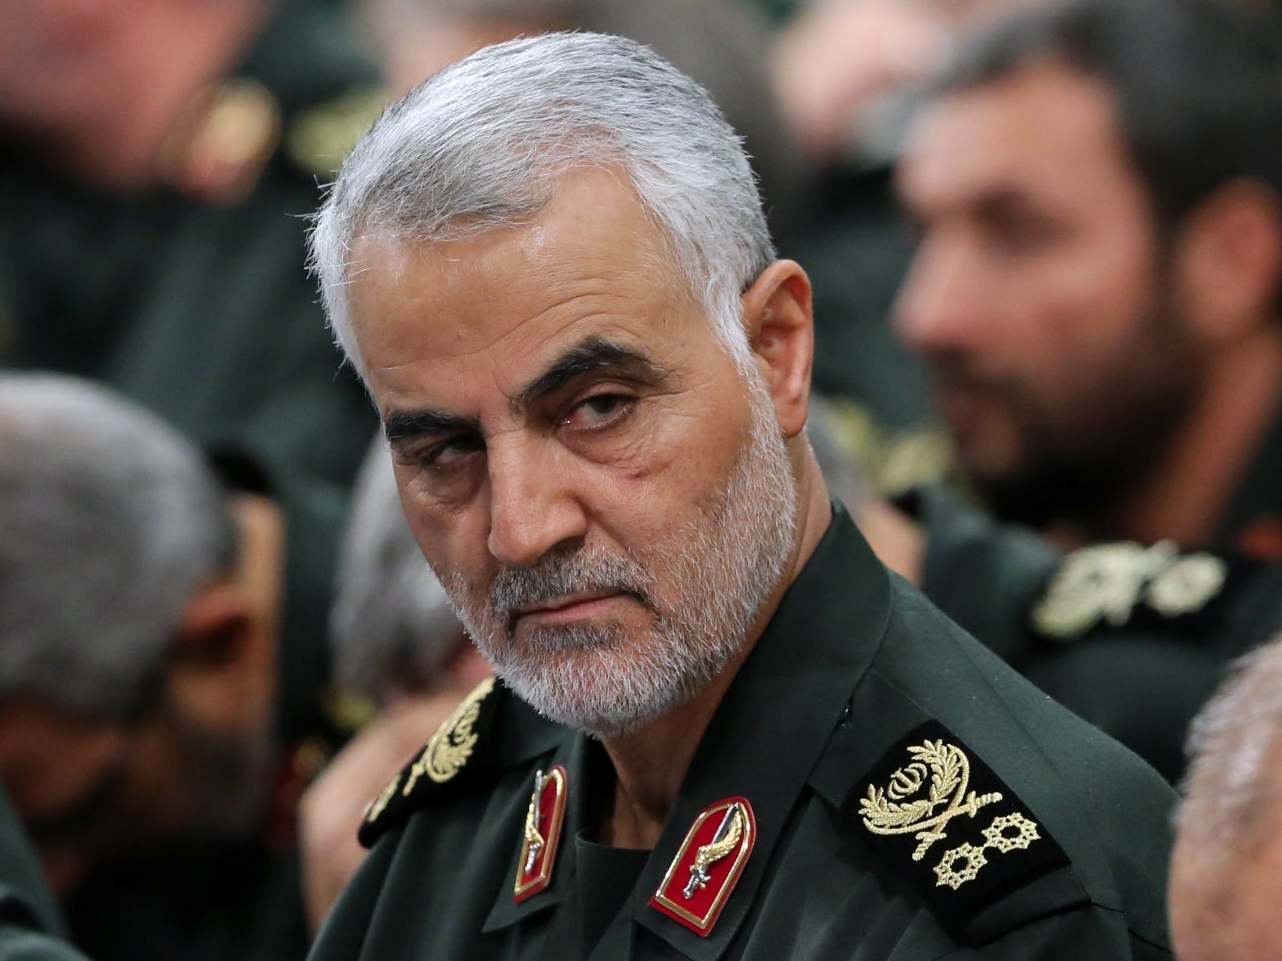 General Qassem Soleimani - O pivô do conflito entre Estados Unidos e Irã